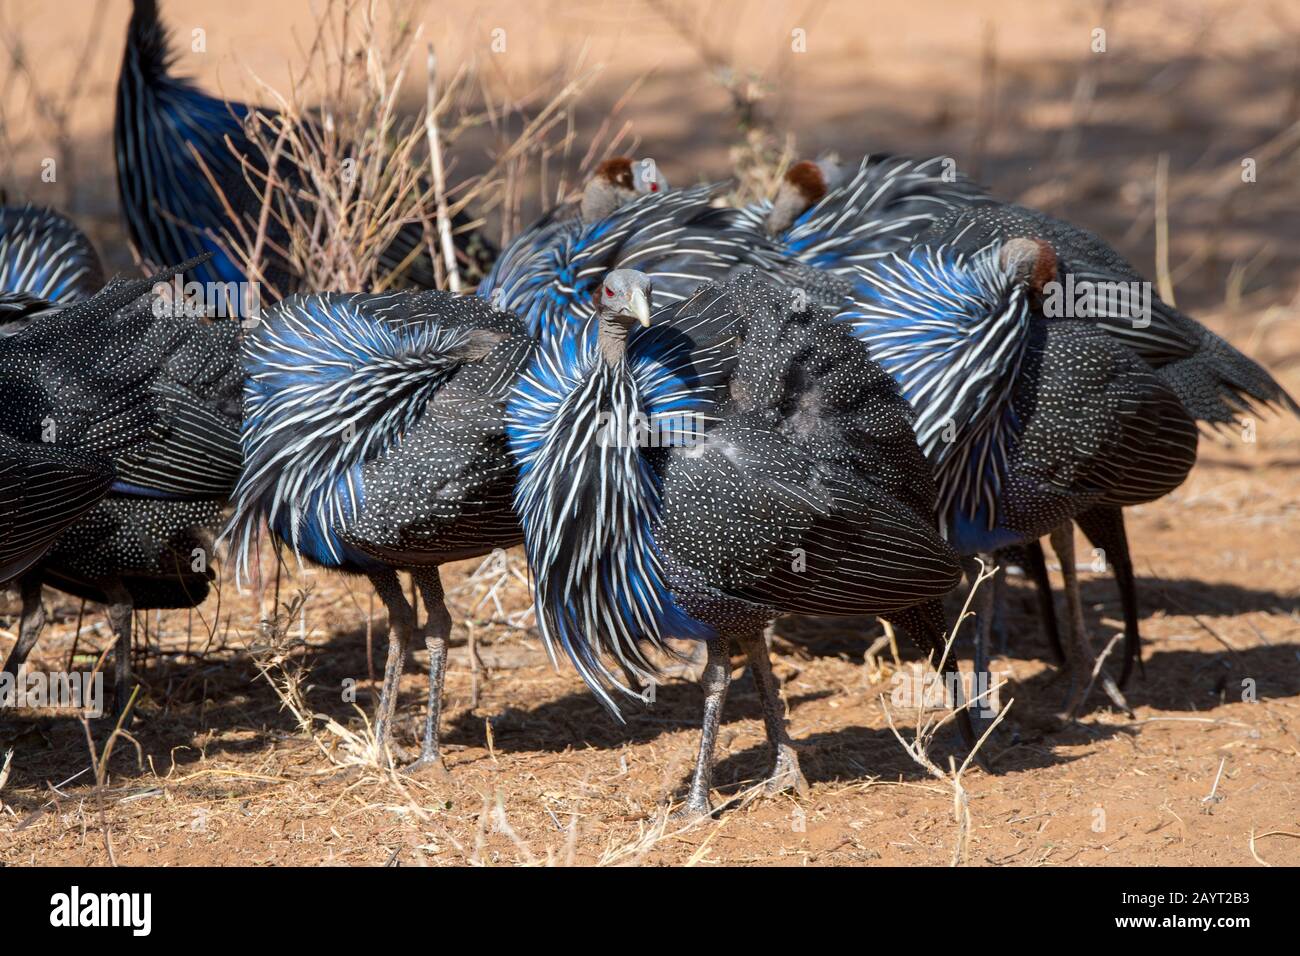 Un grupo de guineabúhos Vulturinos (Acryllium vulturinum), llamado así por su cabeza y cuello calvos, está pretando sus plumas en la Reserva Nacional de Samburu Foto de stock